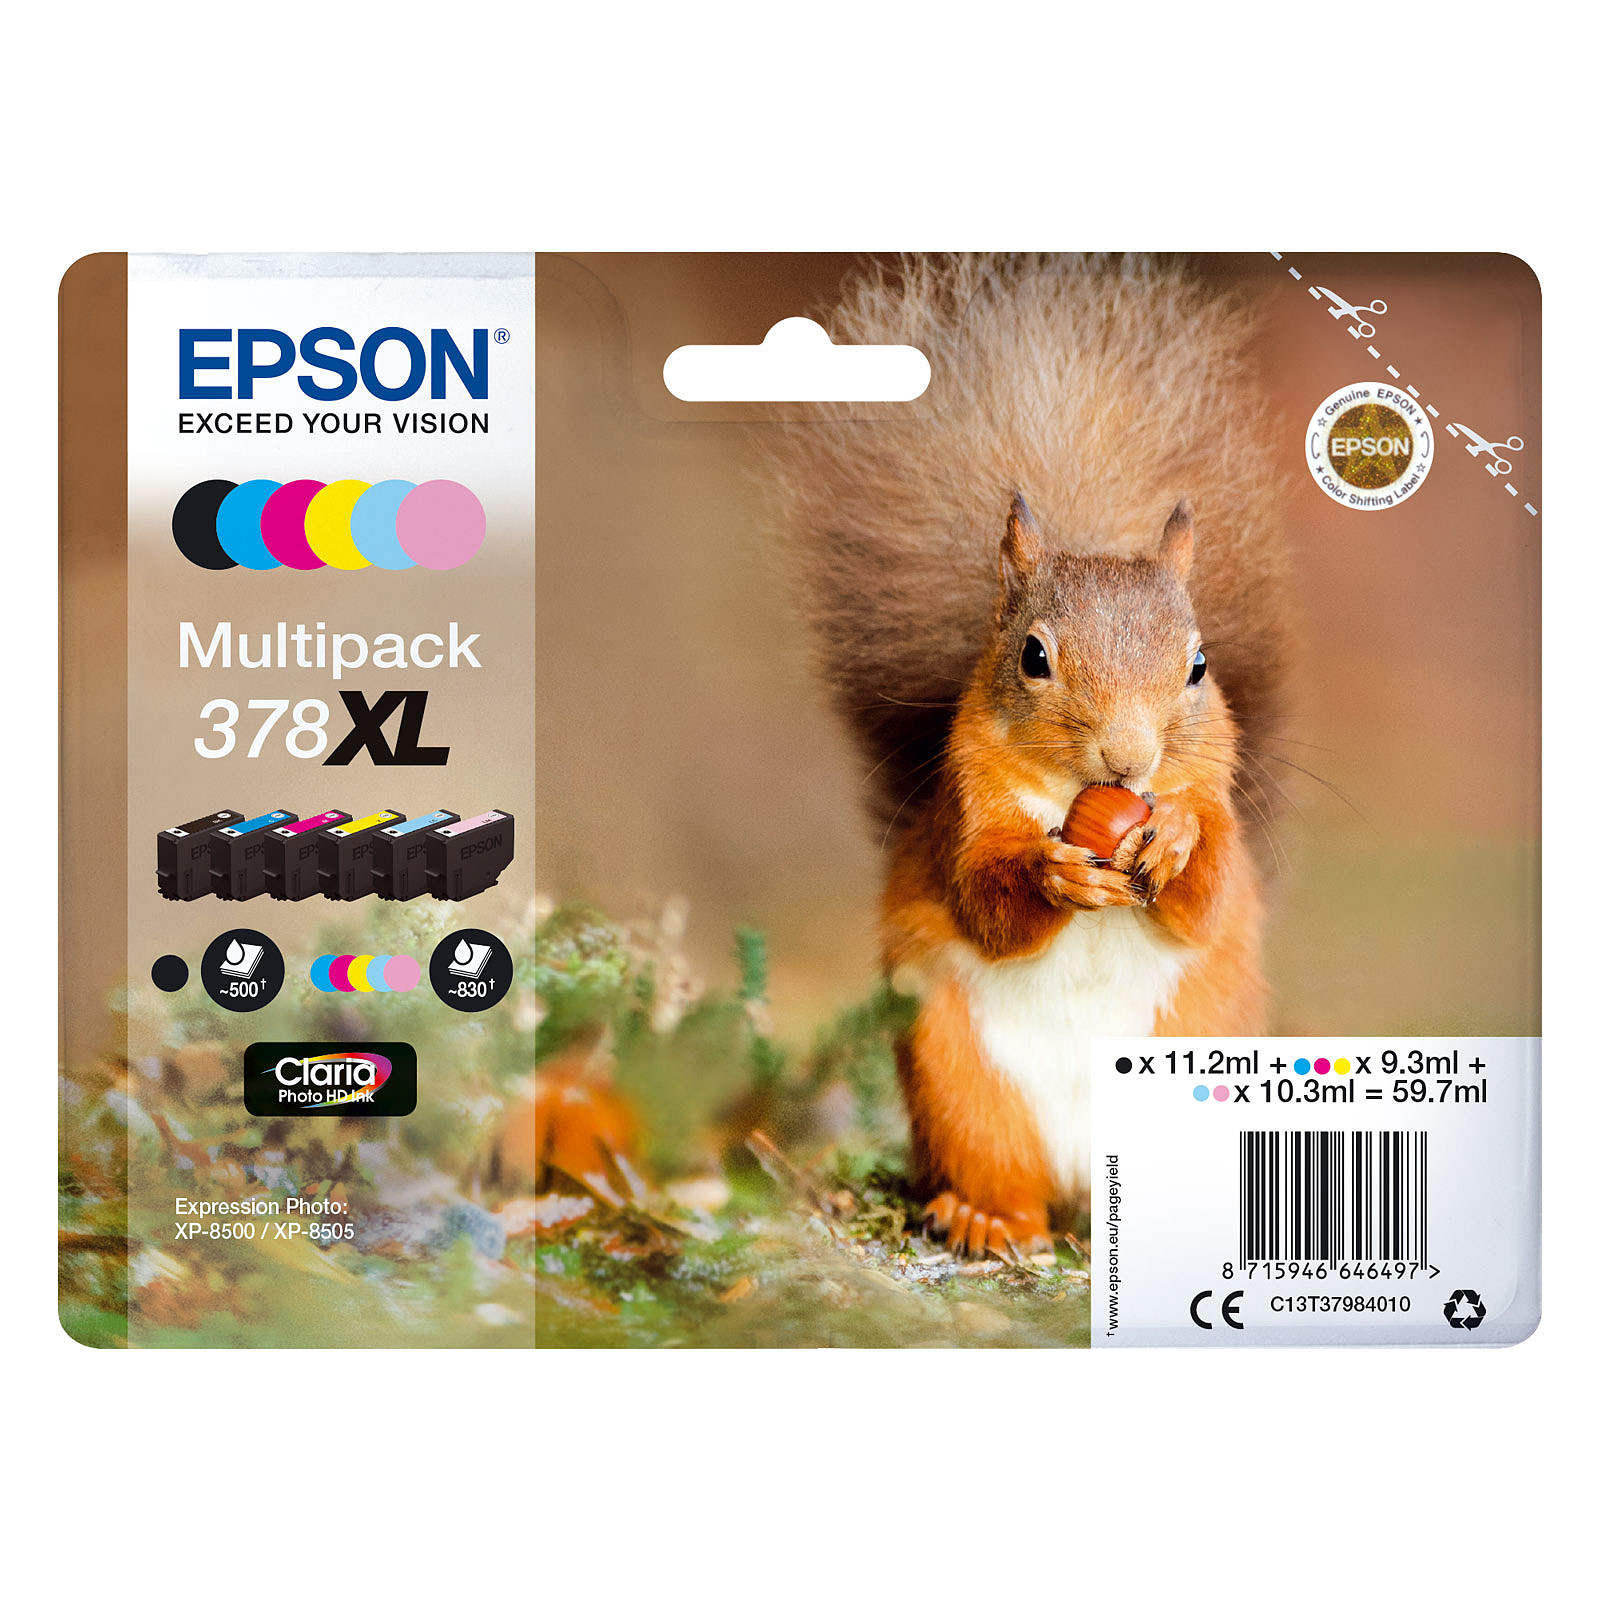 Epson Ecureuil Multipack 378XL - Cartouche imprimante Epson